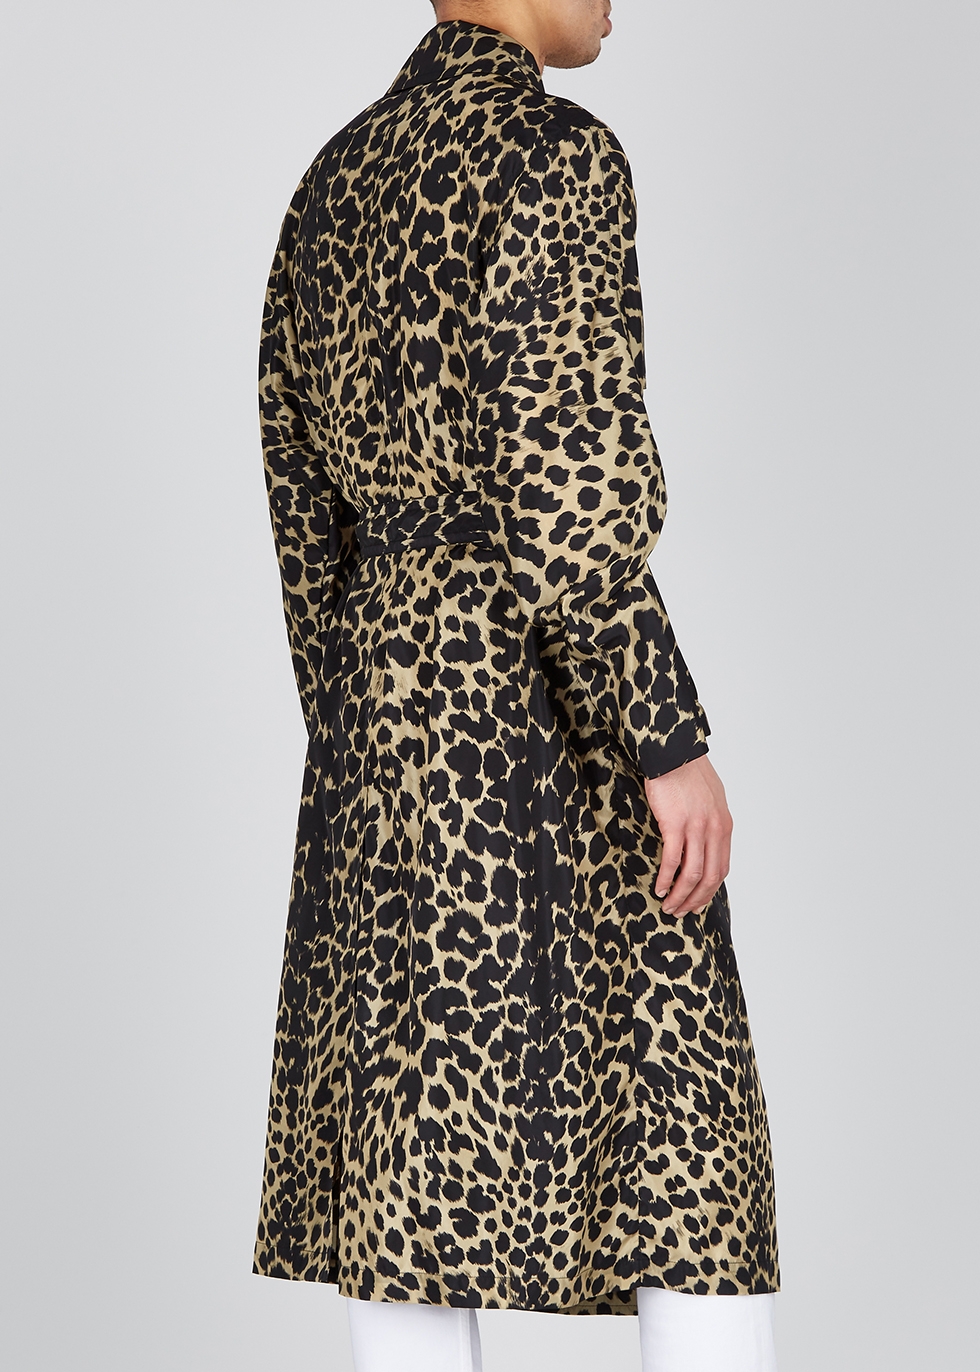 dries van noten leopard coat